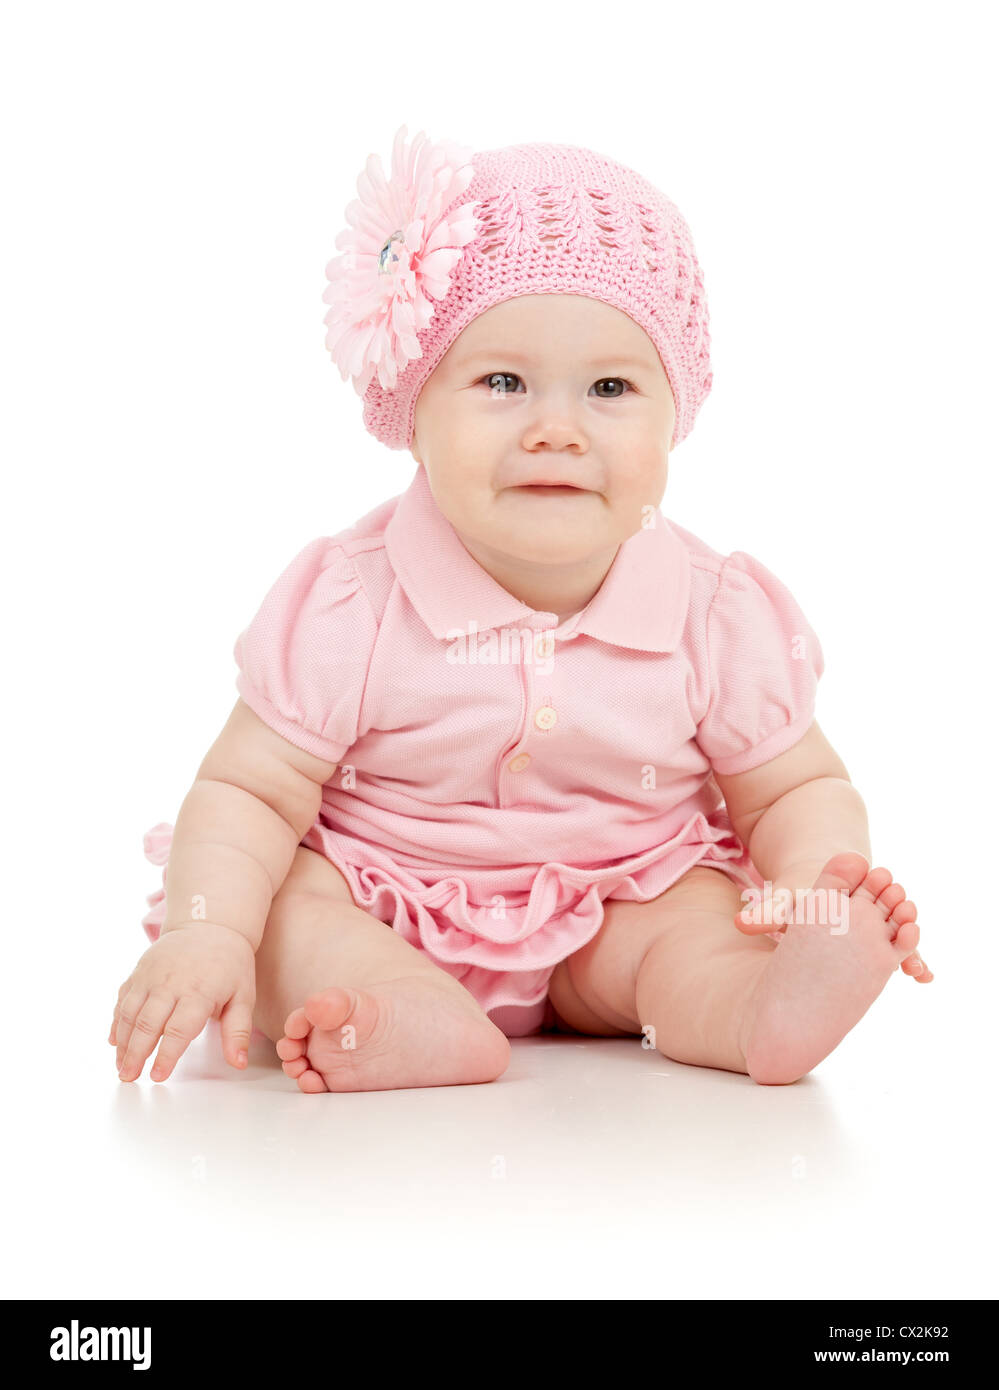 Kleine süße Baby-Mädchen im rosa Kleid isoliert Stockfotografie - Alamy